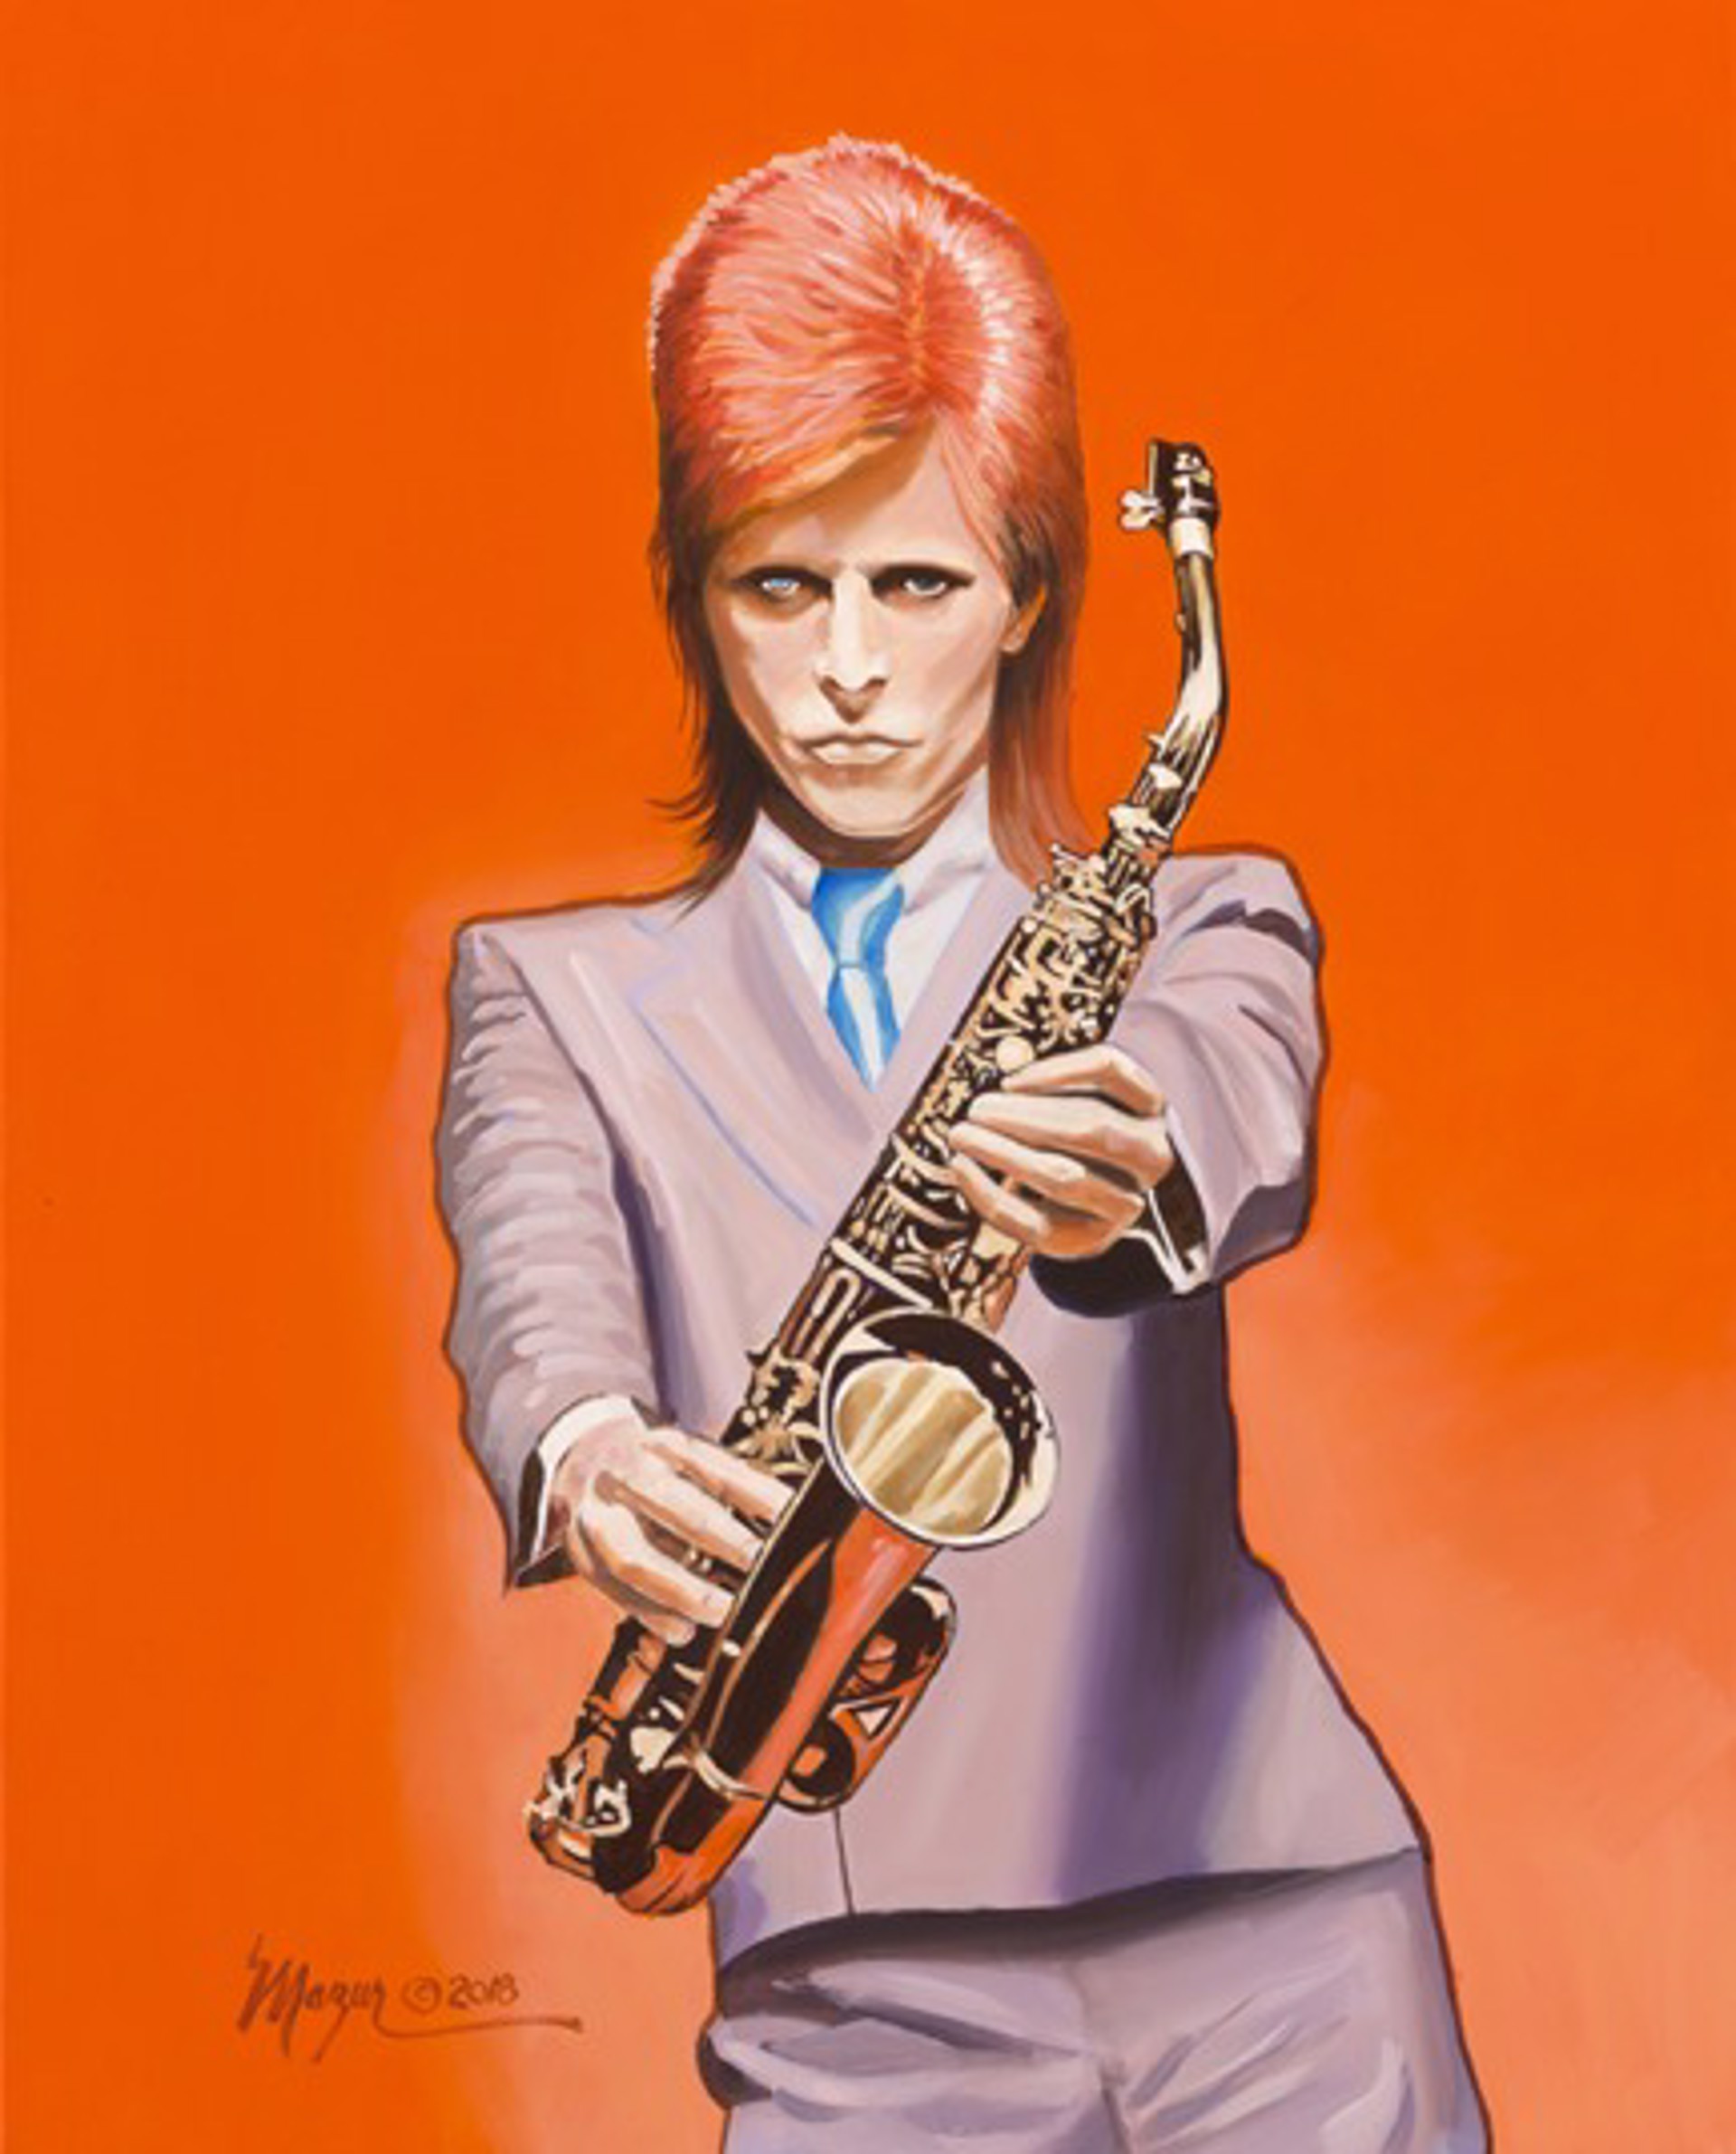 David Bowie Sax by Ruby Mazur